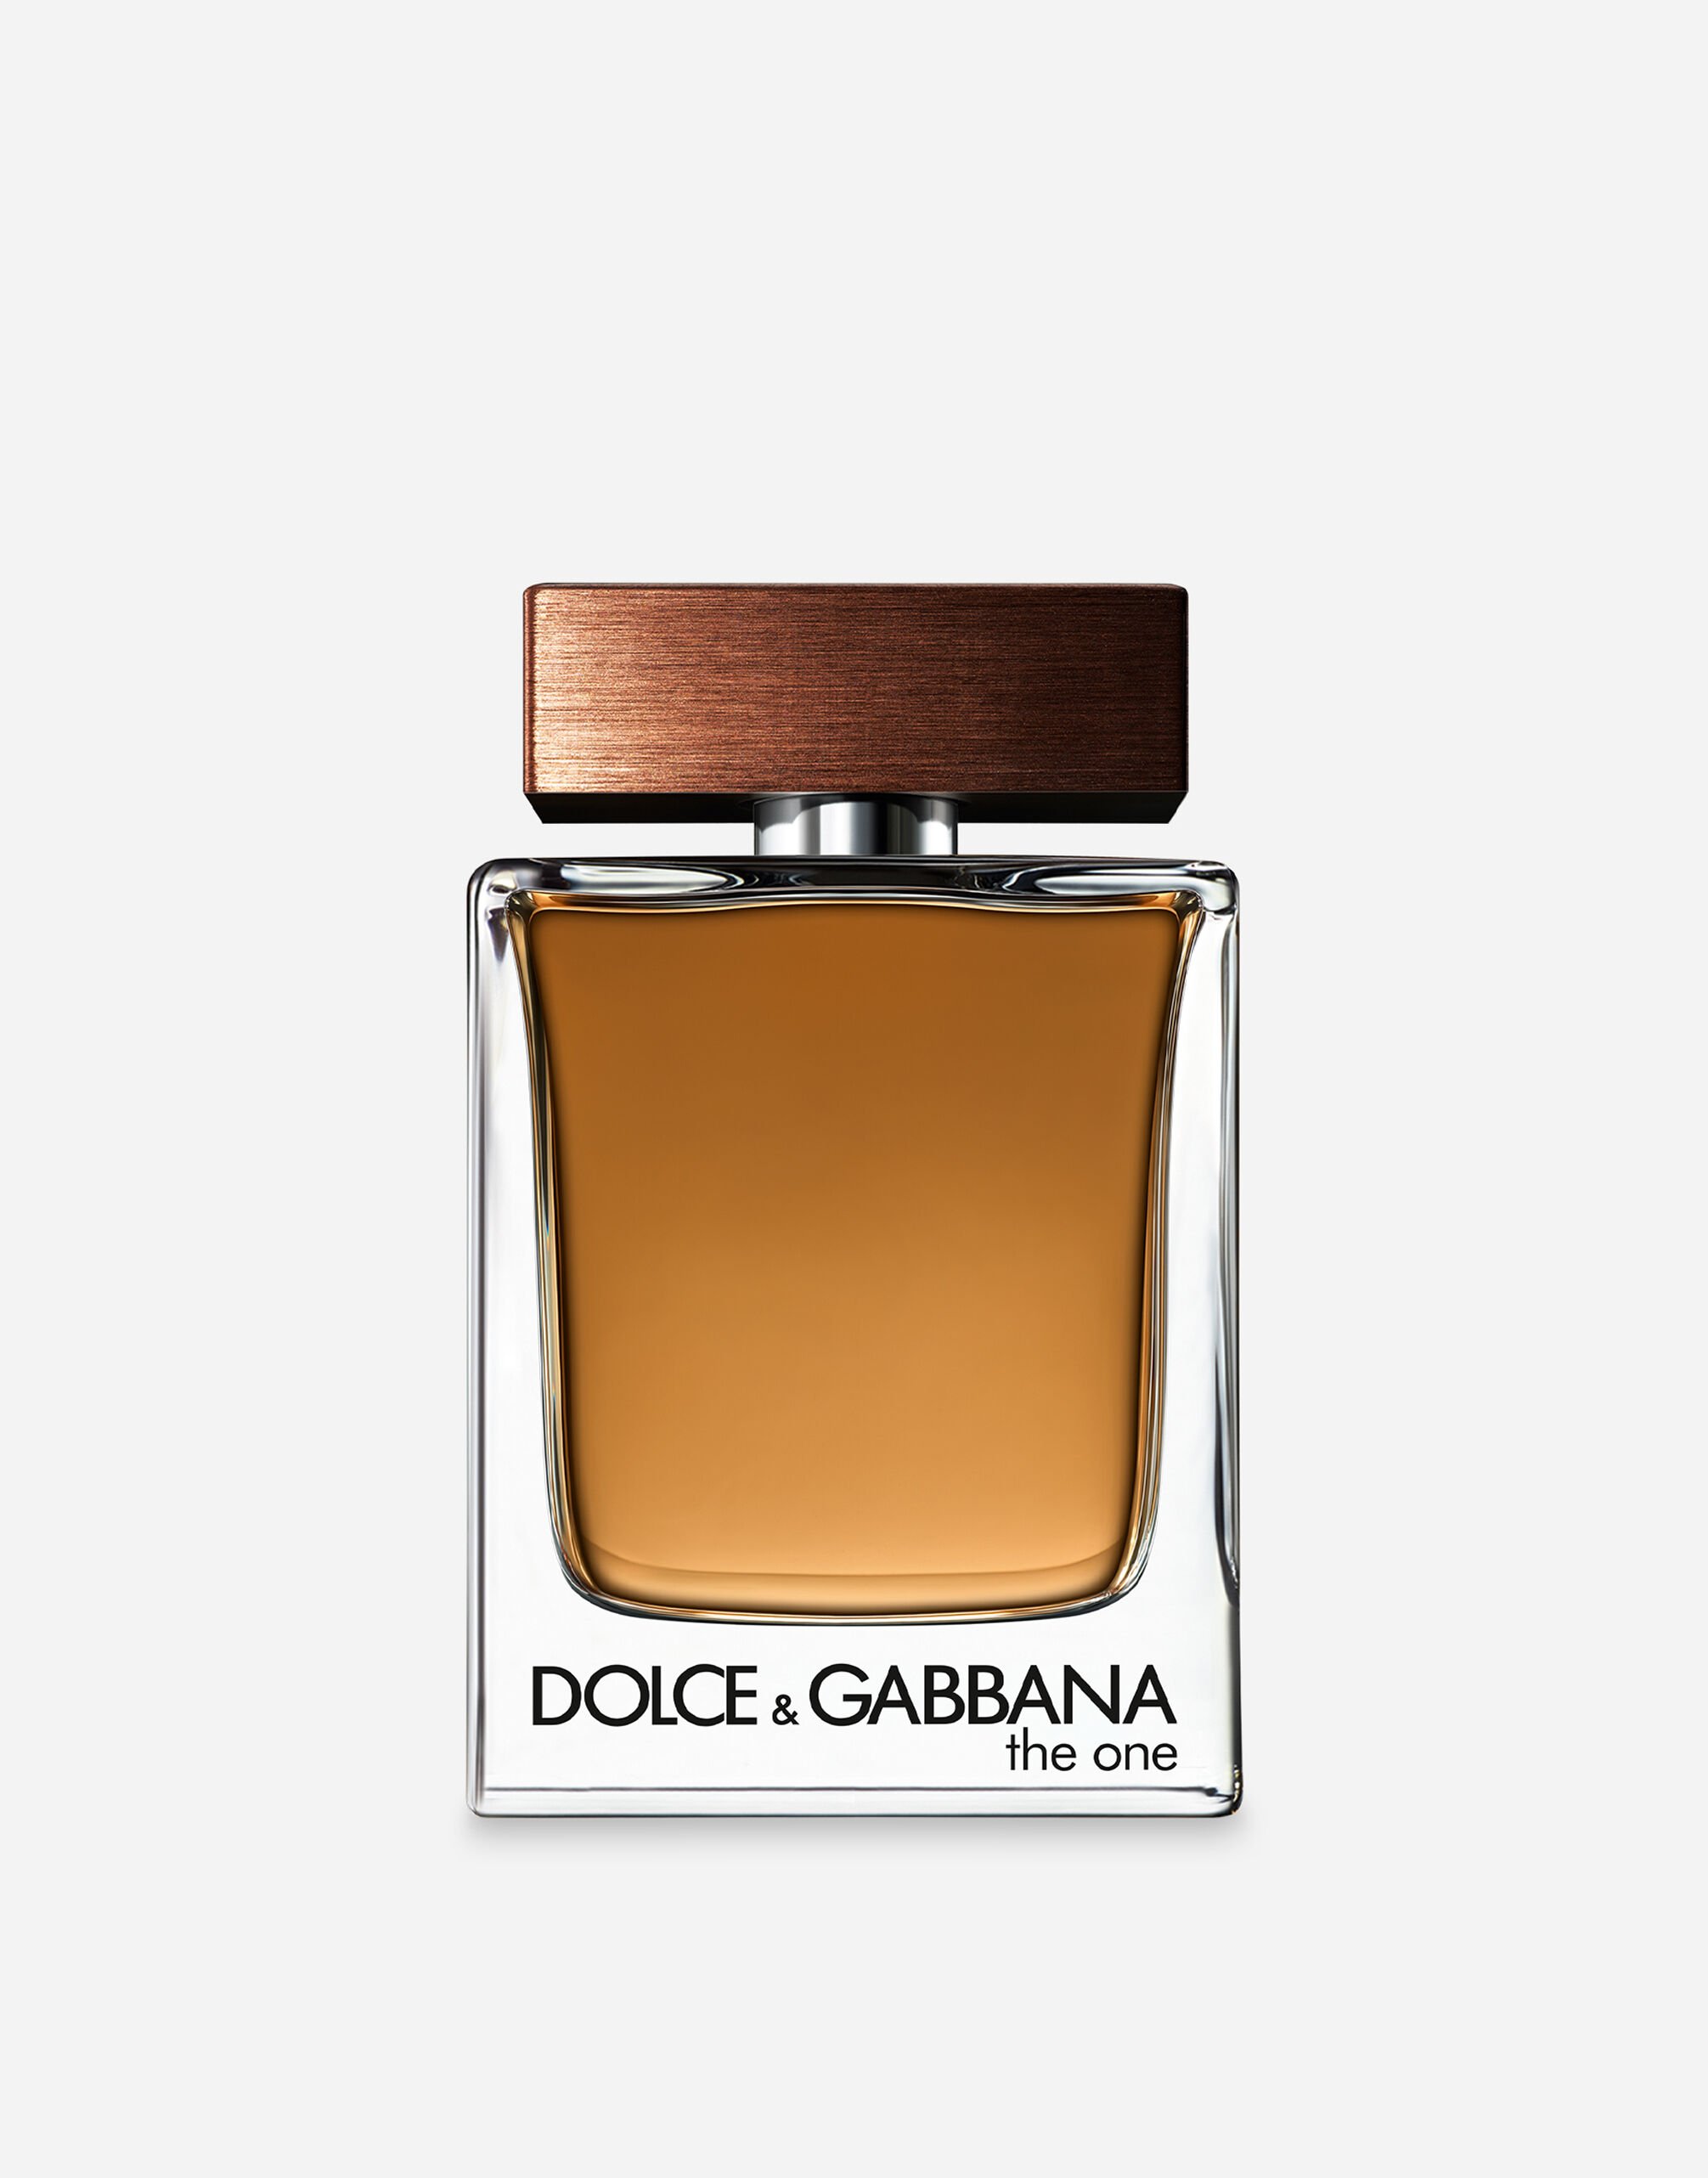 Dolce & Gabbana The One for Men Eau de Toilette - VT00LRVT000